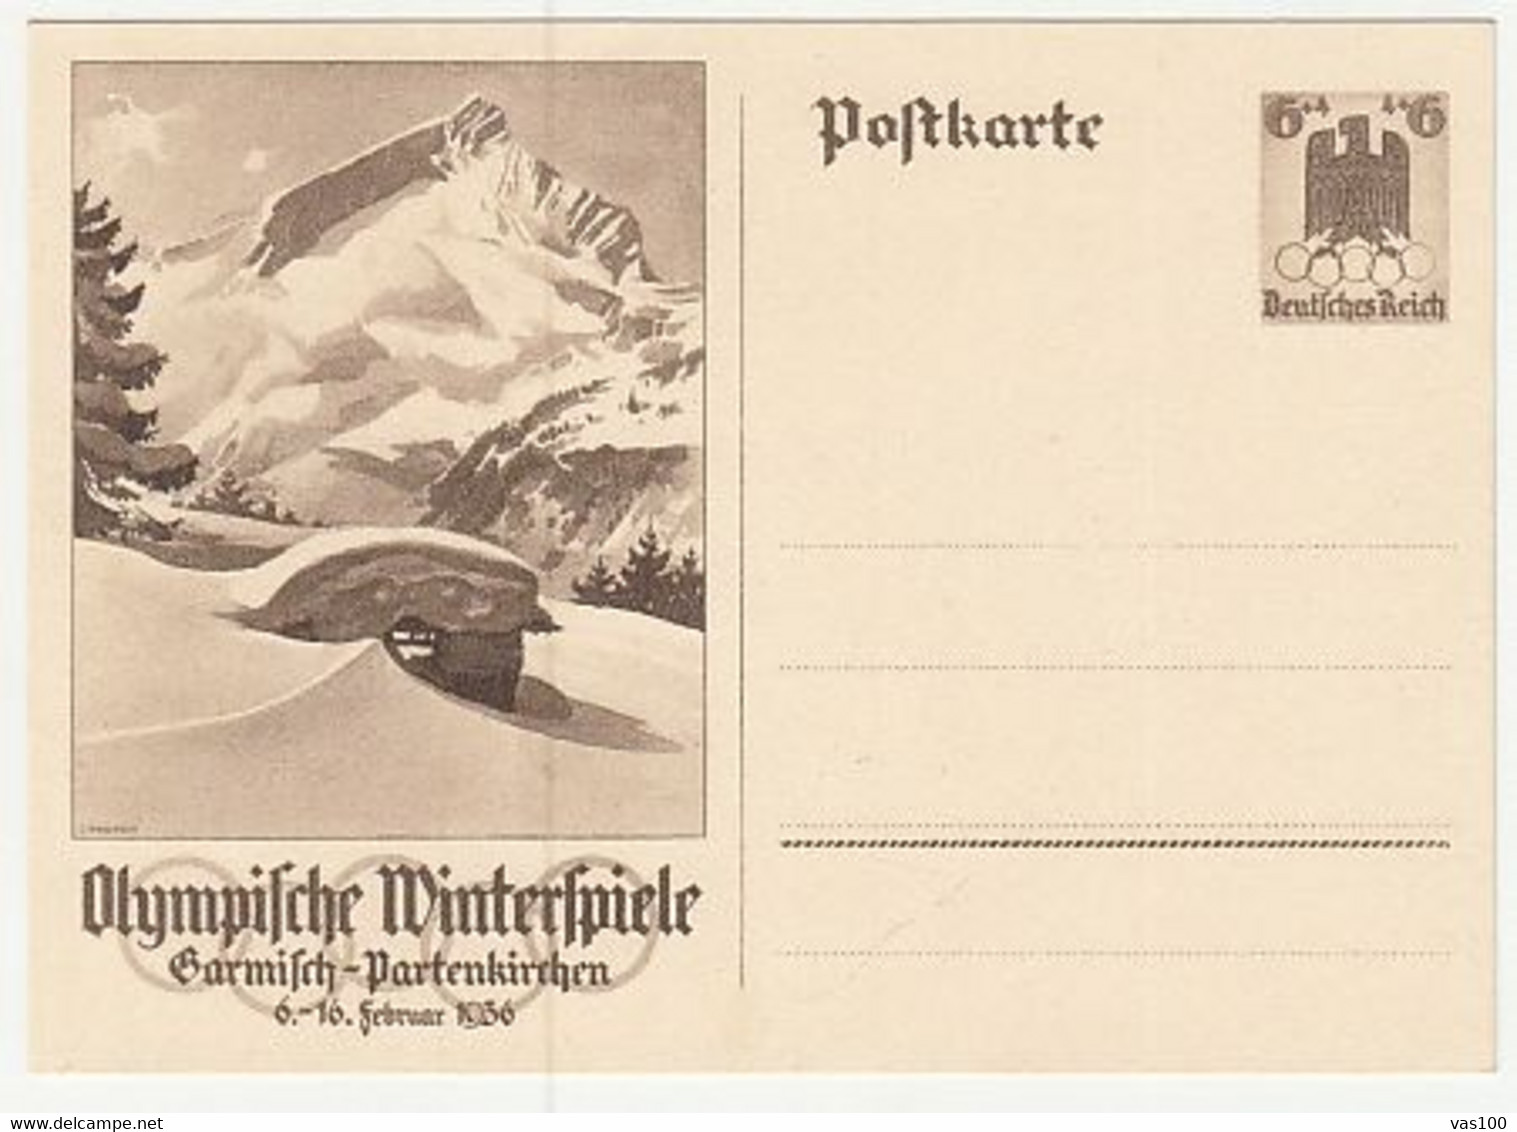 OLYMPIC GAMES, GARMISCH-PARTENKIRCHEN'36, PC STATIONERY, ENTIER POSTAL, 1936, GERMANY - Winter 1936: Garmisch-Partenkirchen